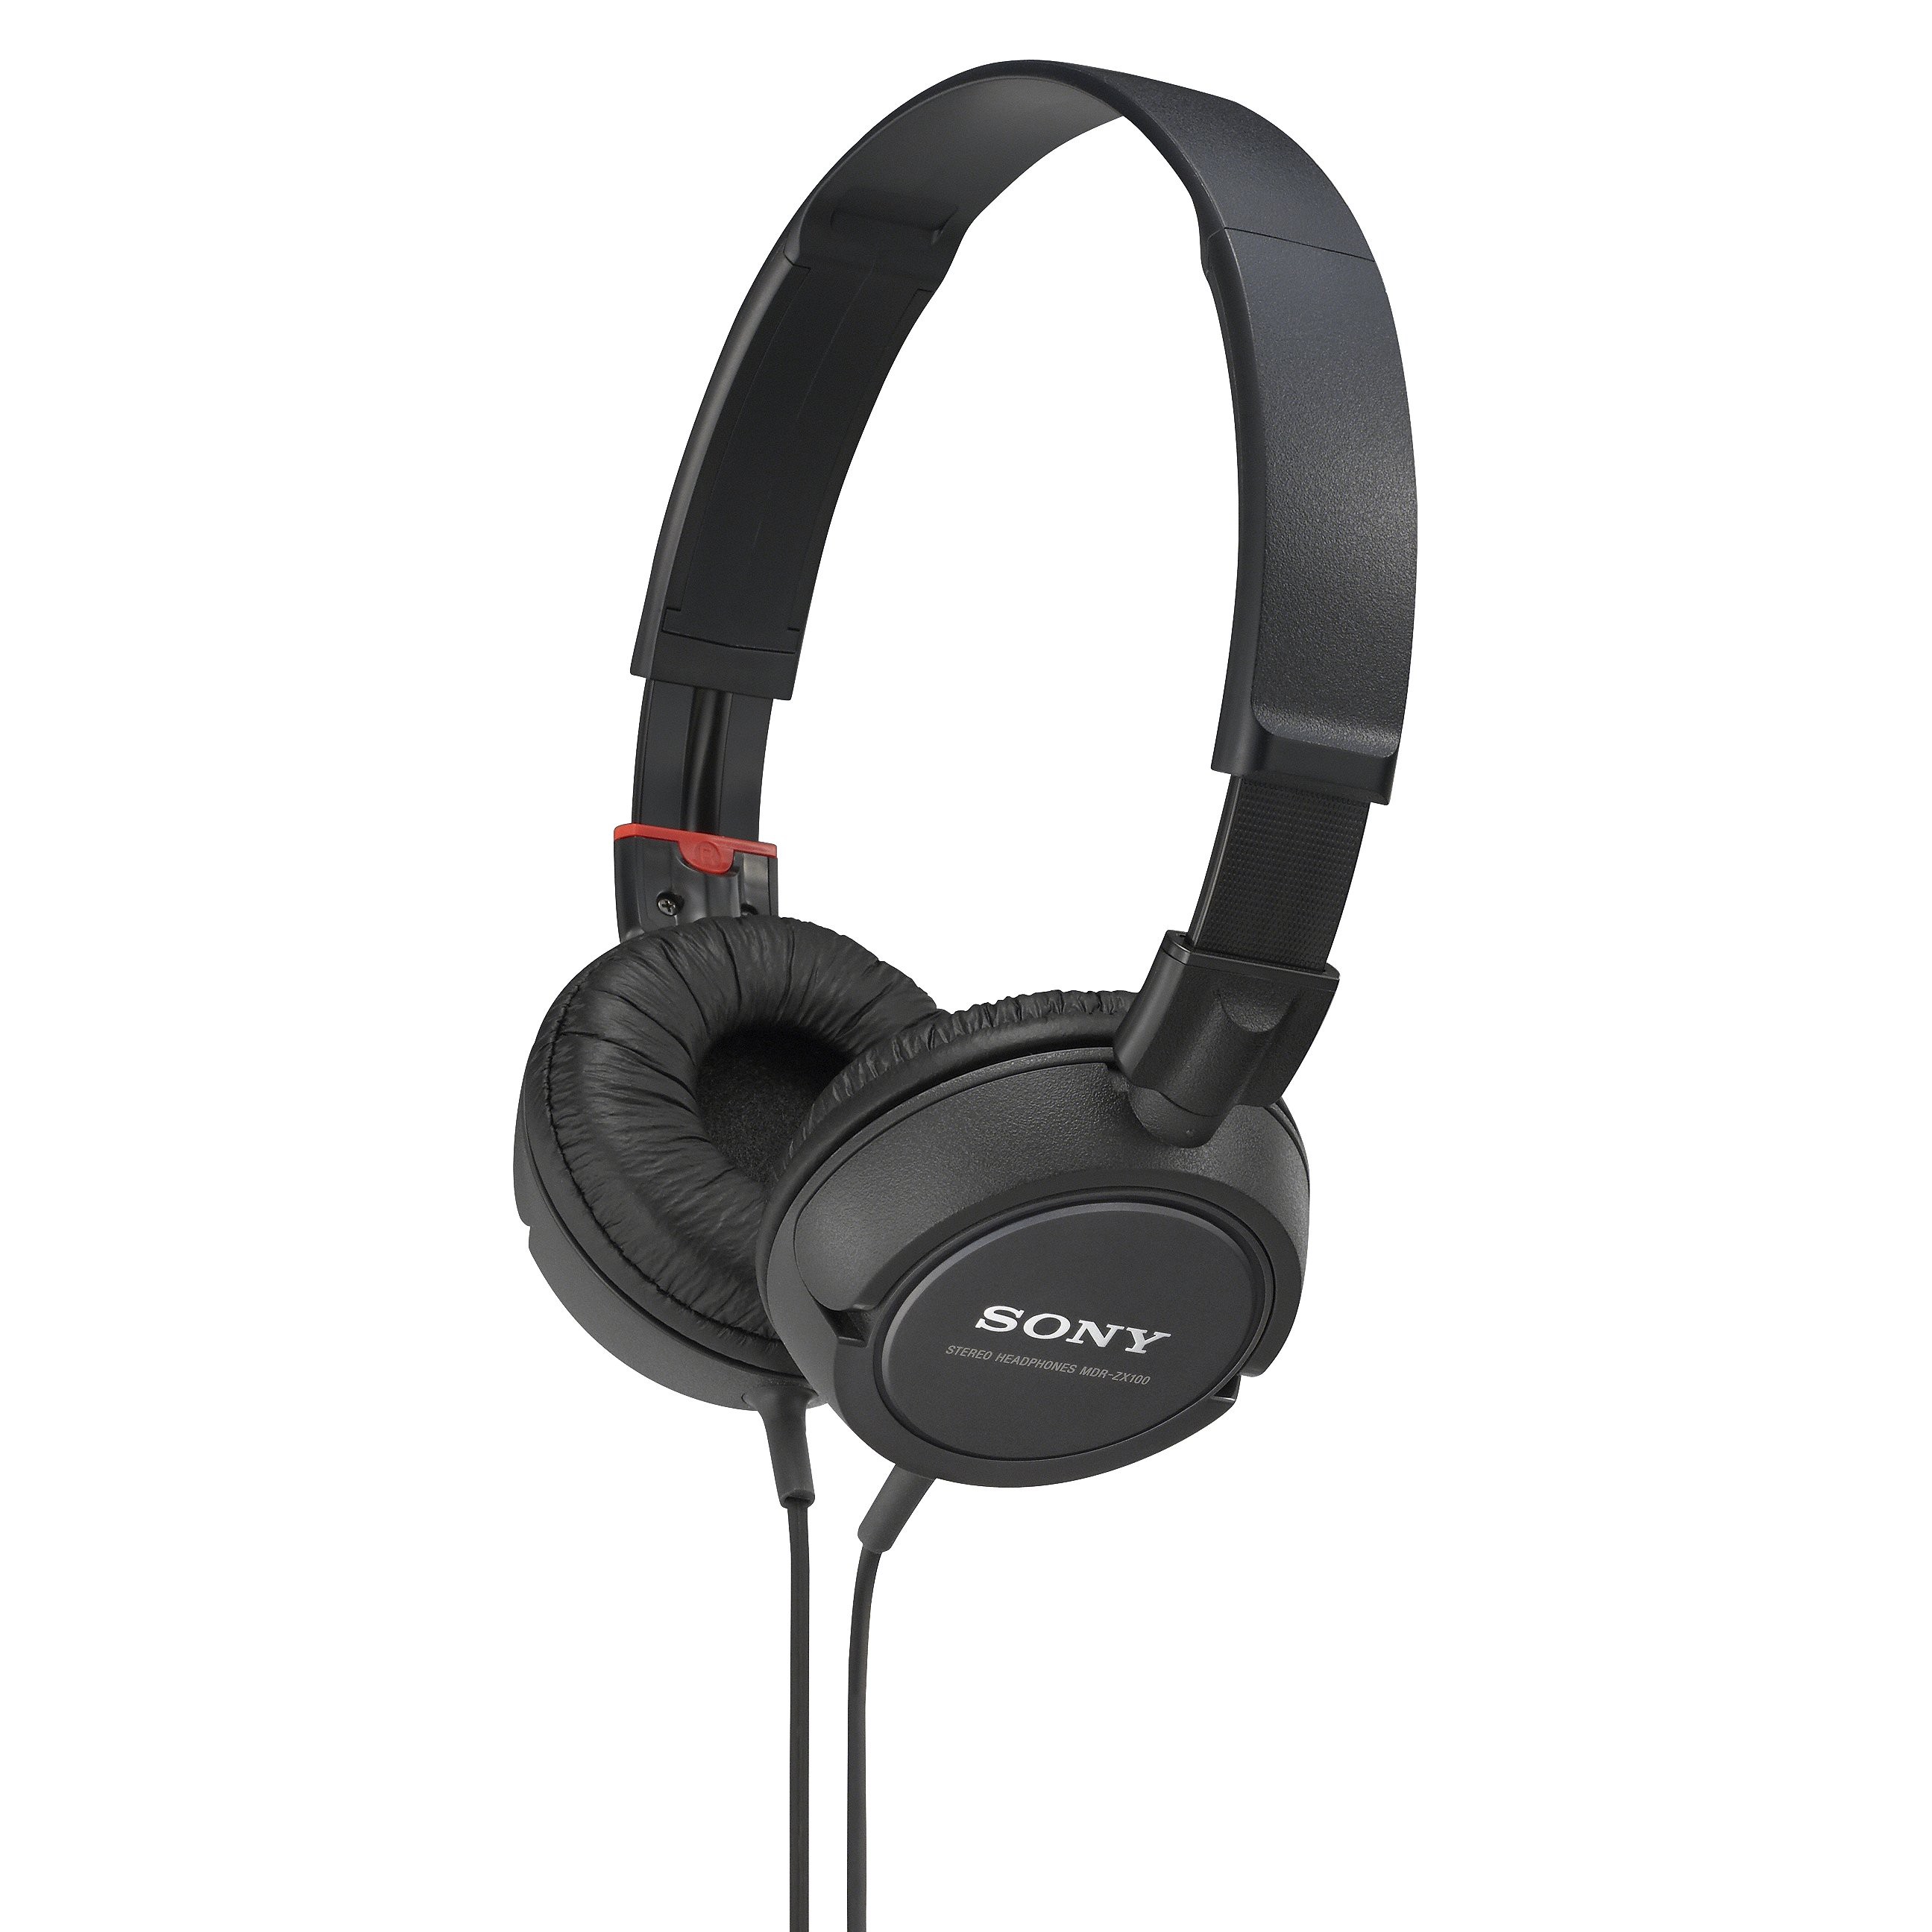 Sony Outdoor Headphones - Black (MDRZX100/Blk)